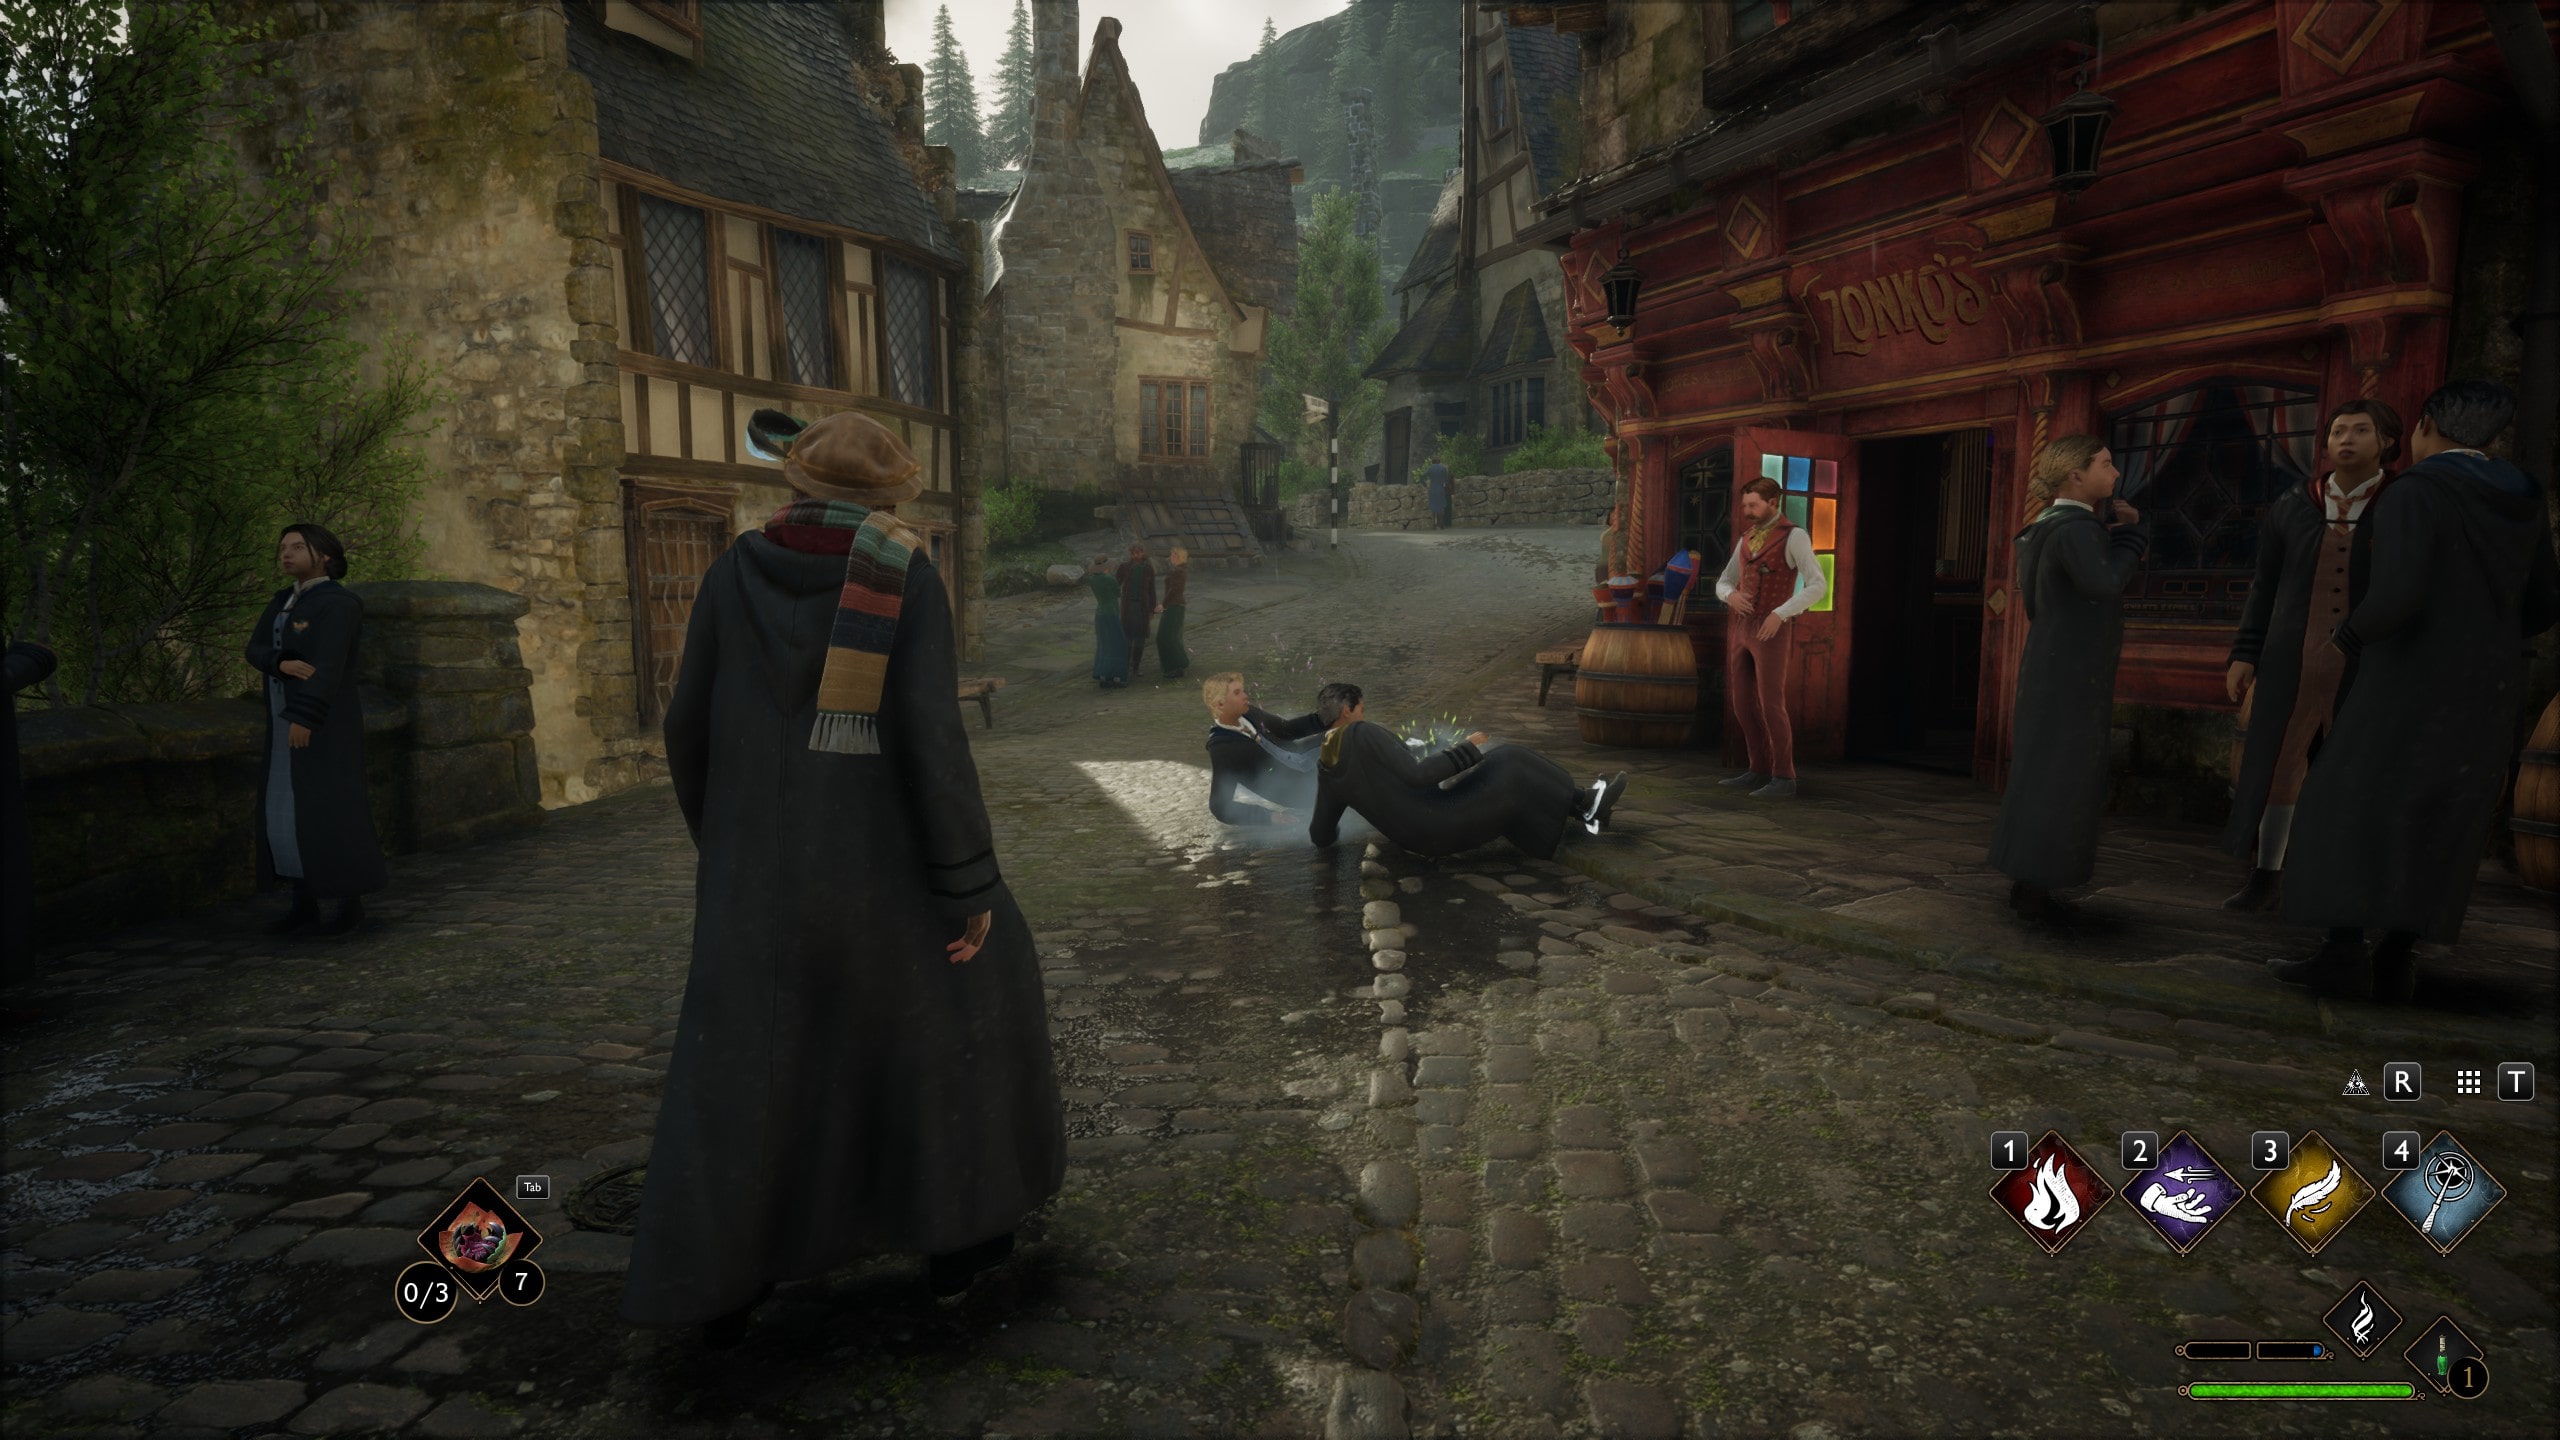 Dieser Screenshot von Hogwarts Legacy zeigt eine Szenerie im Zauberer-Dorf Hogsmeade. Zwei Schüler werden aus dem Zauberer-Geschäft Zomlos geworfen. Die Schüler sind an den Füßen mit einer magischen Fessel fixiert, während der Ladenbesitzer sie auf die Straße wirf. 